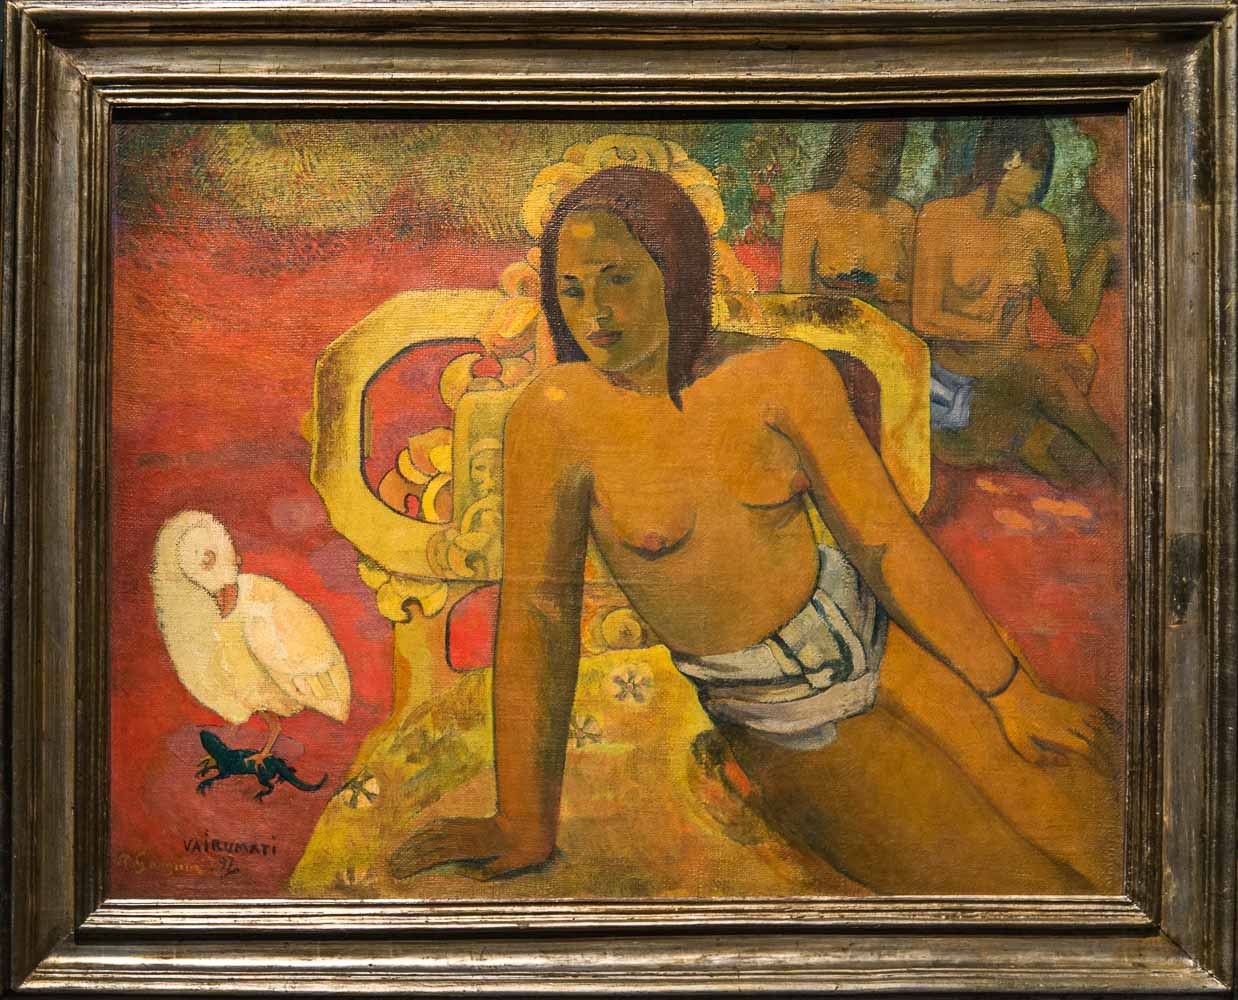 Gauguin-089 lAlchimiste.jpg